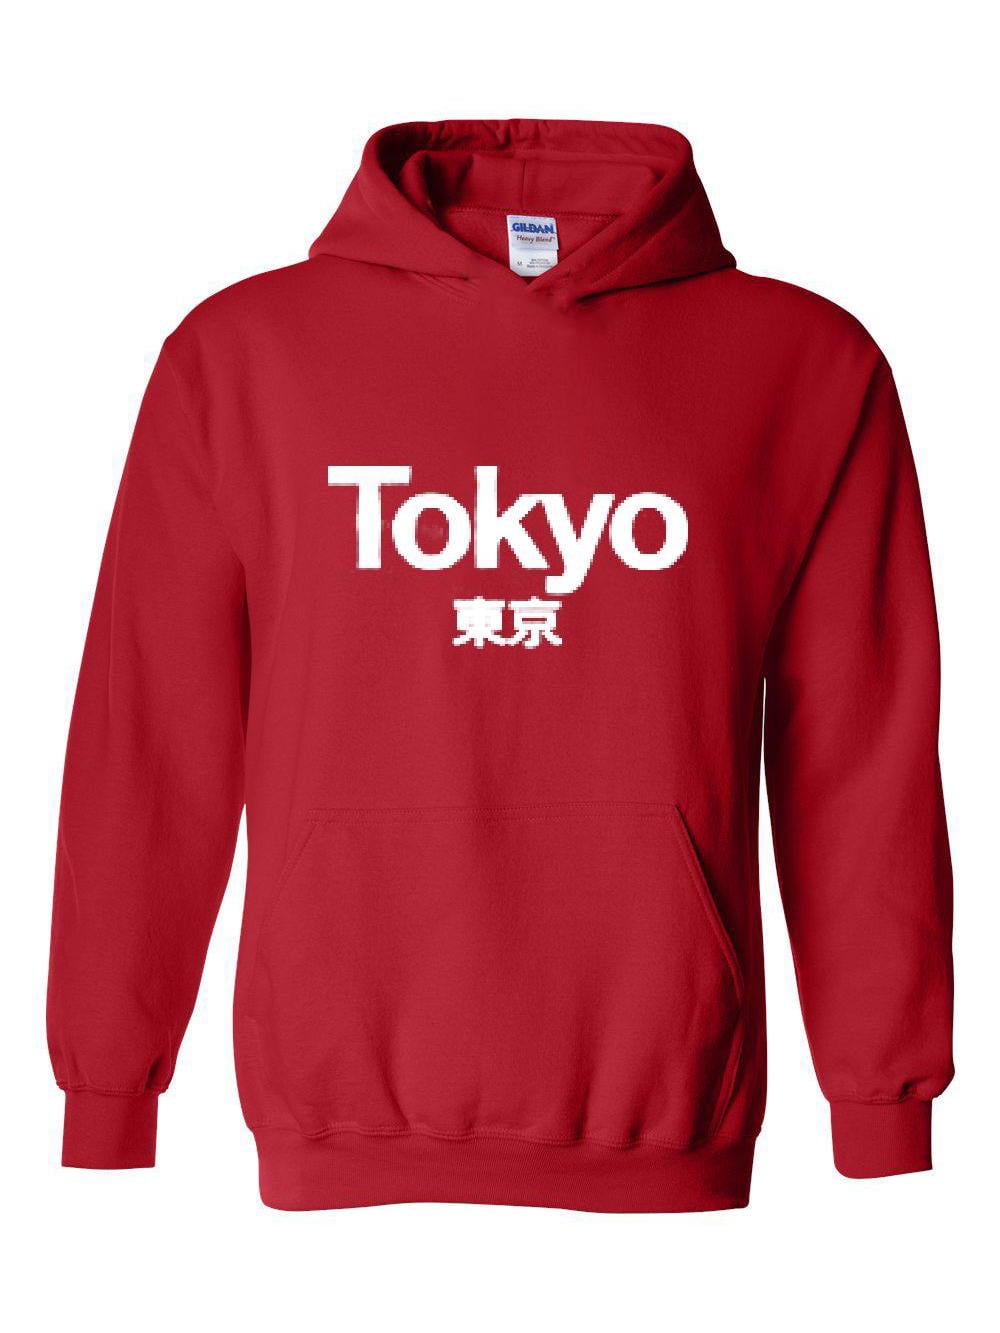 Mom's Favorite - Unisex Tokyo Japan Hoodie Sweatshirt - Walmart.com ...